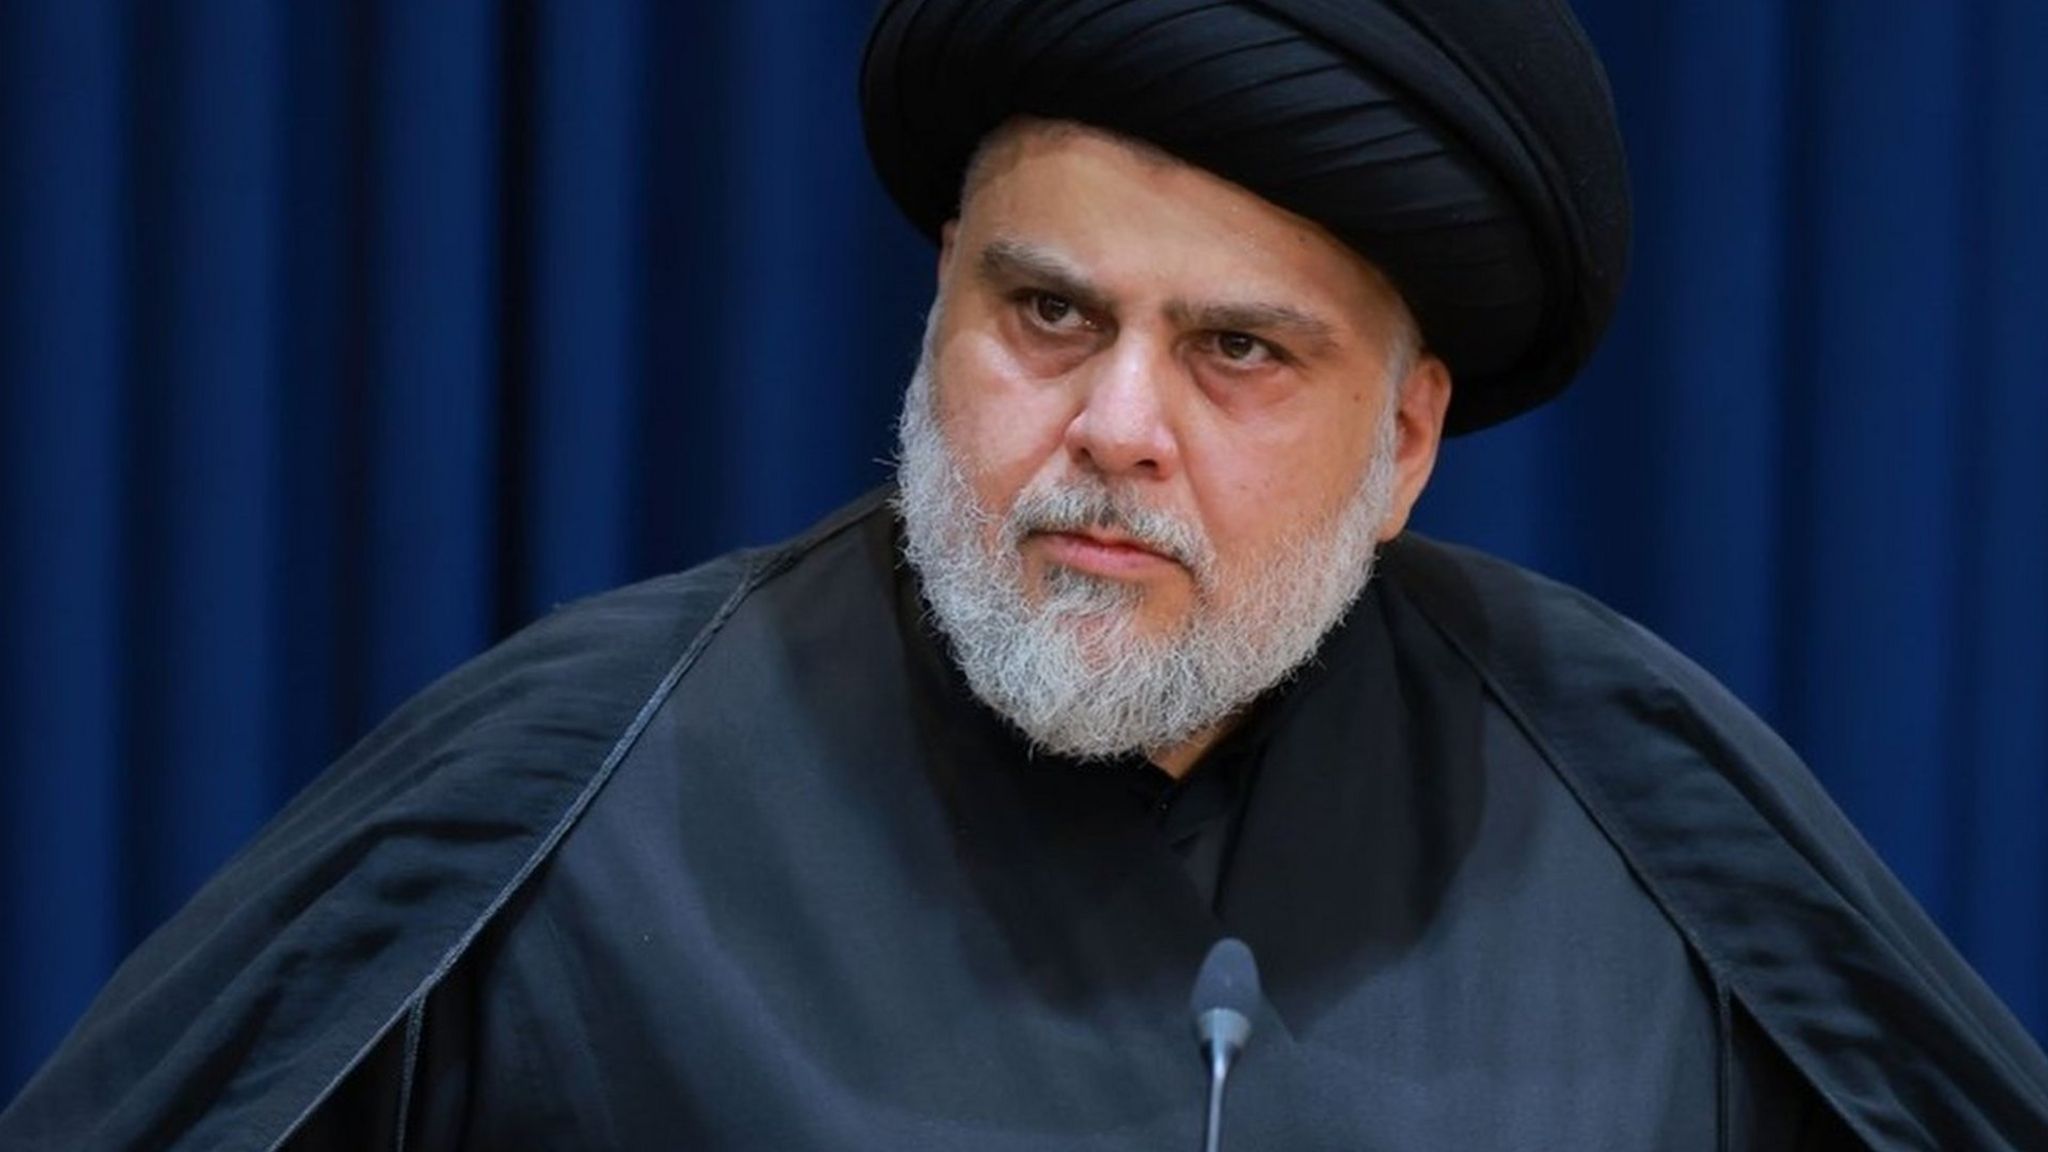 Iraqi Shia cleric Moqtada al-Sadr speaks at a news conference in Najaf, Iraq (30 August 2022)